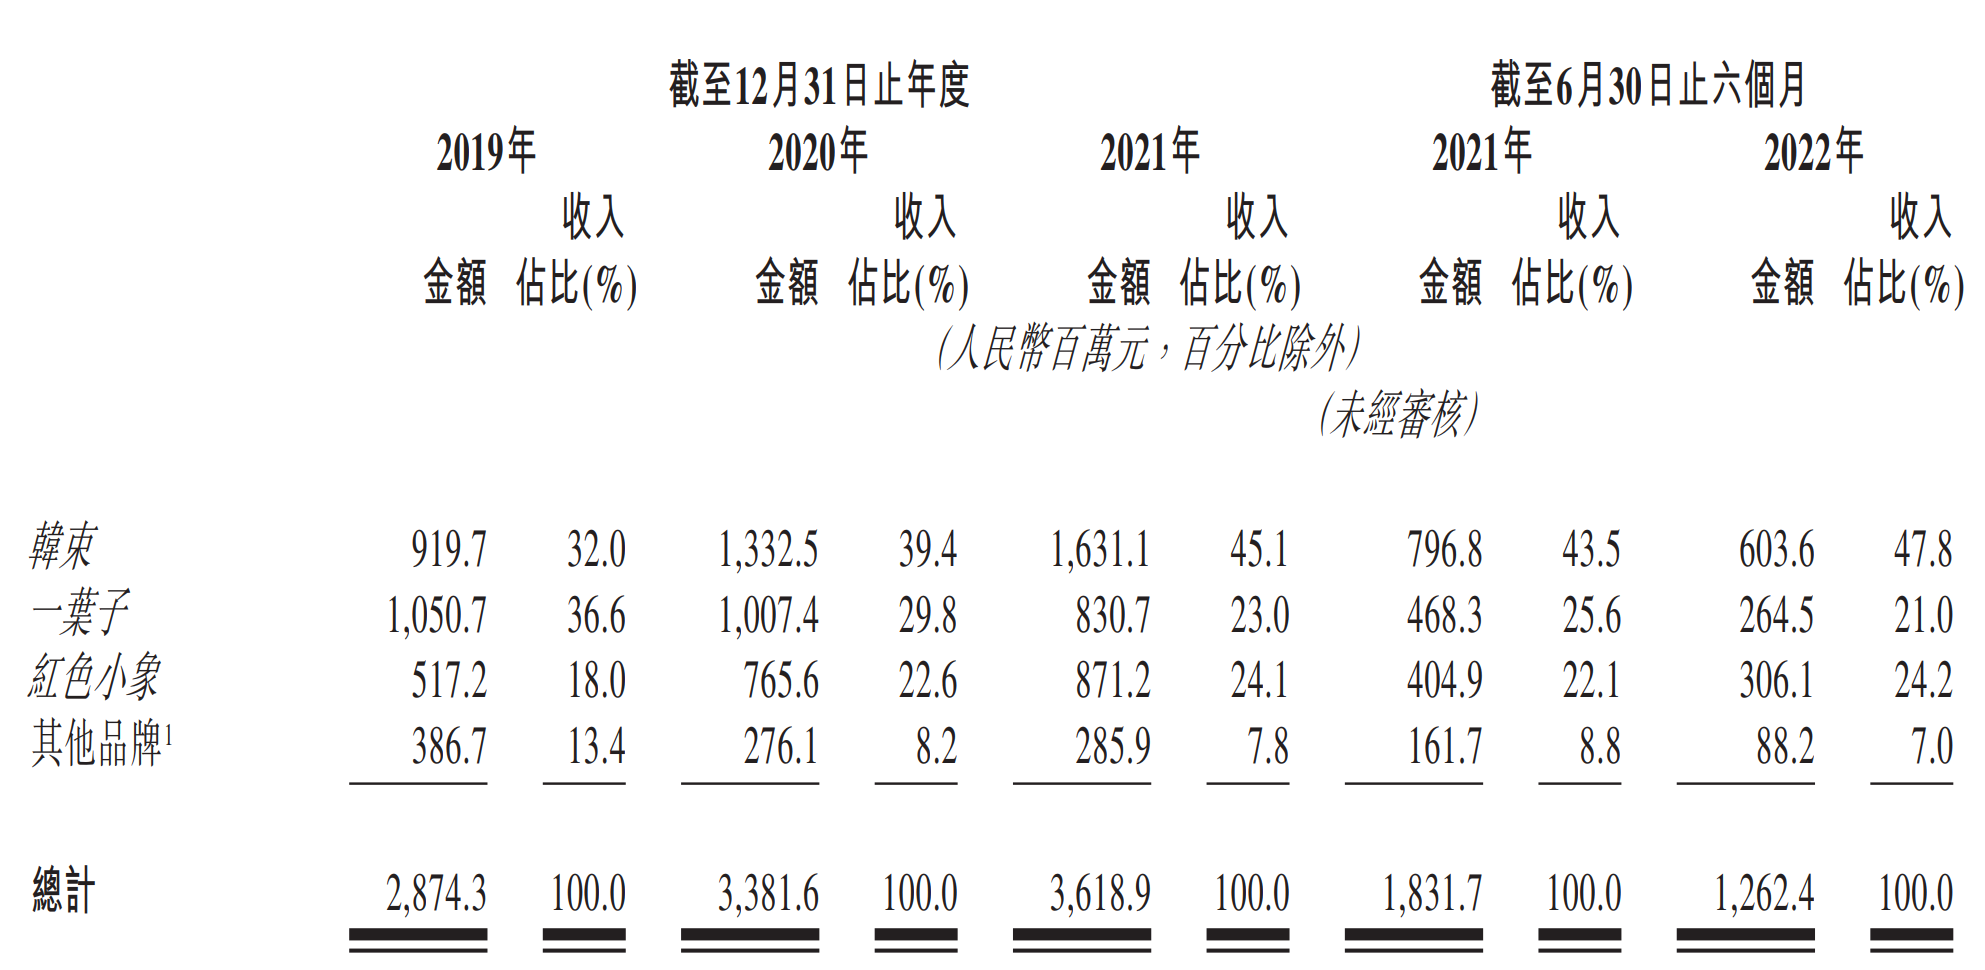 韩束母公司再递表申请港股IPO 去年一叶子品牌收入减少近两成